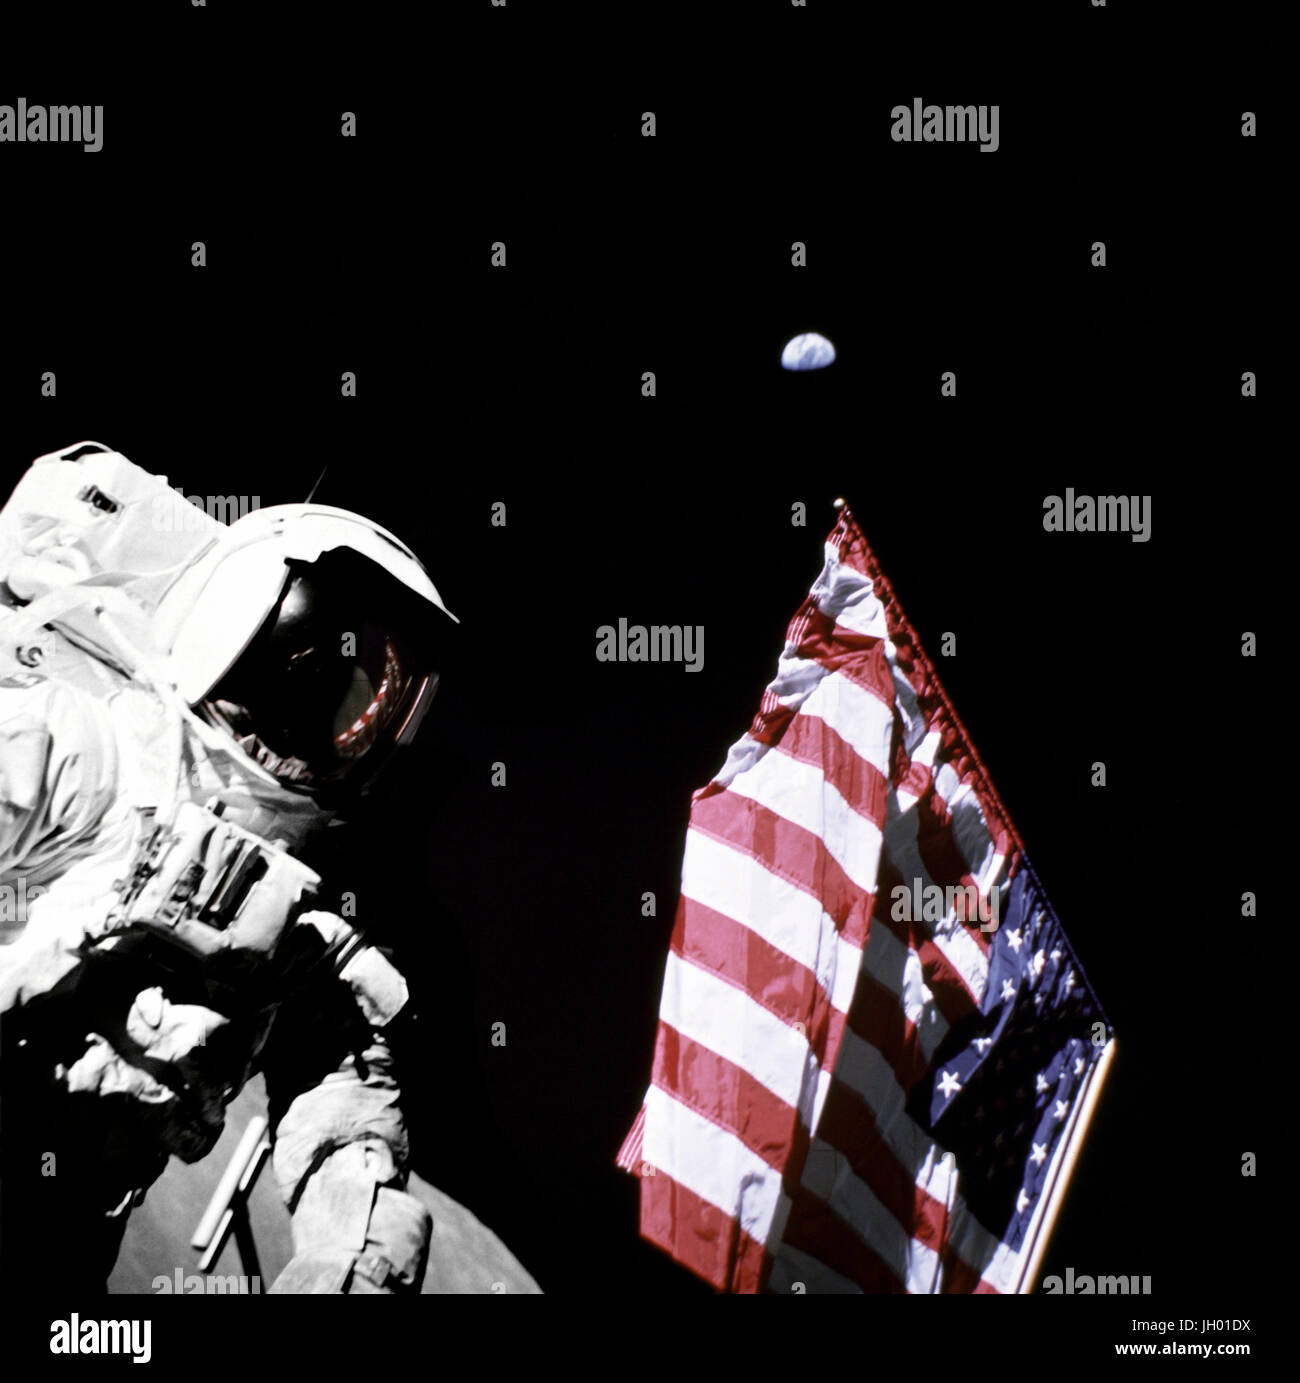 Schmitt mit Flagge und Erde oben. Geologe-Astronaut Harrison Schmitt, Pilot der Mondlandefähre von Apollo 17, ist neben der amerikanischen Flagge während Extravehicular Activity (EVA) von der Mission der NASA letzten Mondlandung der Apollo-Serie fotografiert. Das Foto wurde am Taurus-Littrow-Landeplatz. Der höchste Teil der Flagge scheint in Richtung unseres Planetenerde im fernen Hintergrund zeigen... Fotograf: NASA Eugene Cernan Stockfoto